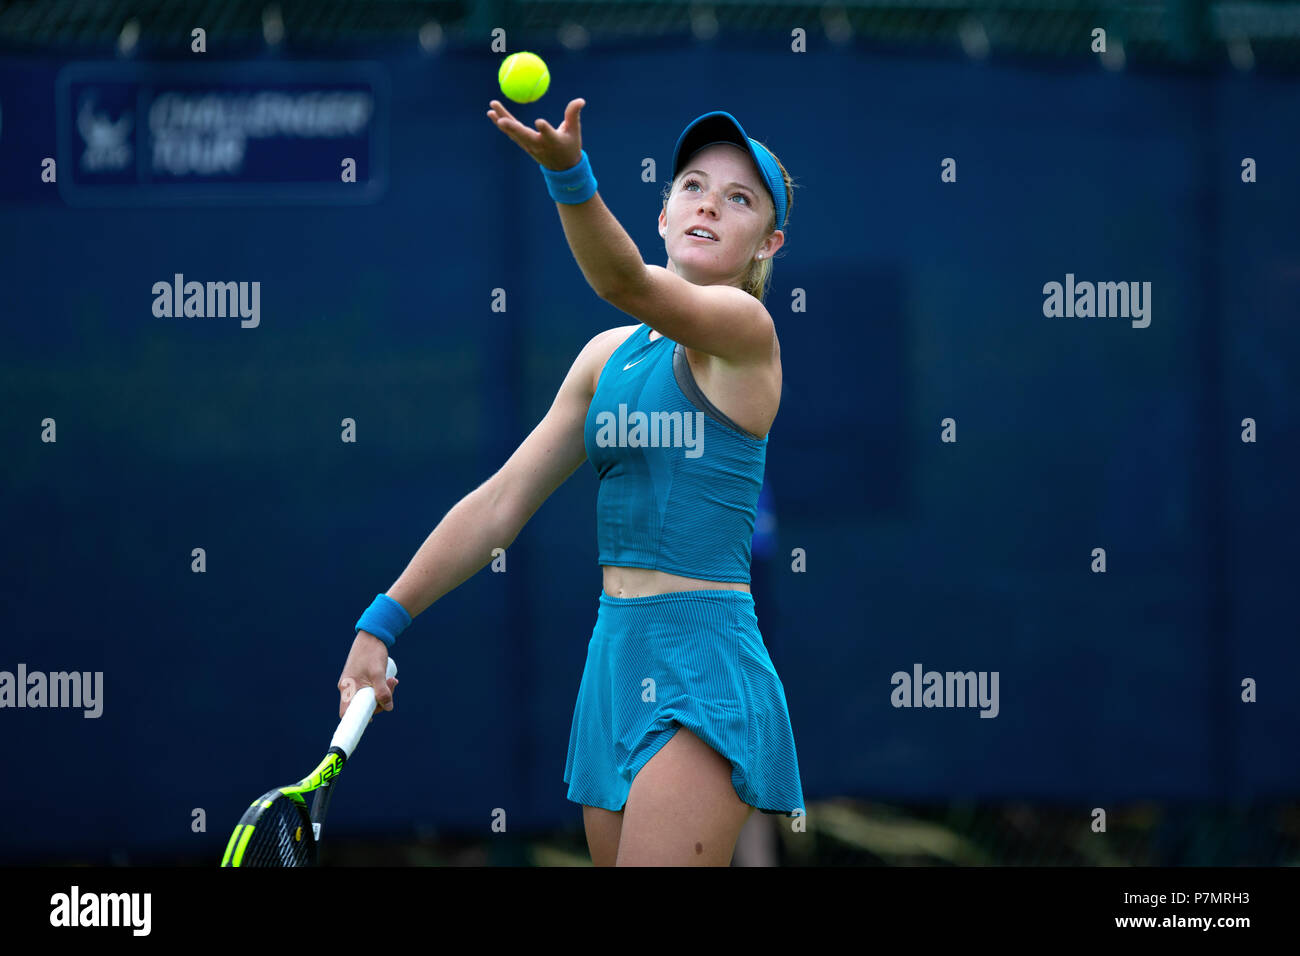 Katie Swan, femmina professionali giocatore di tennis, rilascia la palla da tennis in aria pronti a servire durante una partita. Foto Stock